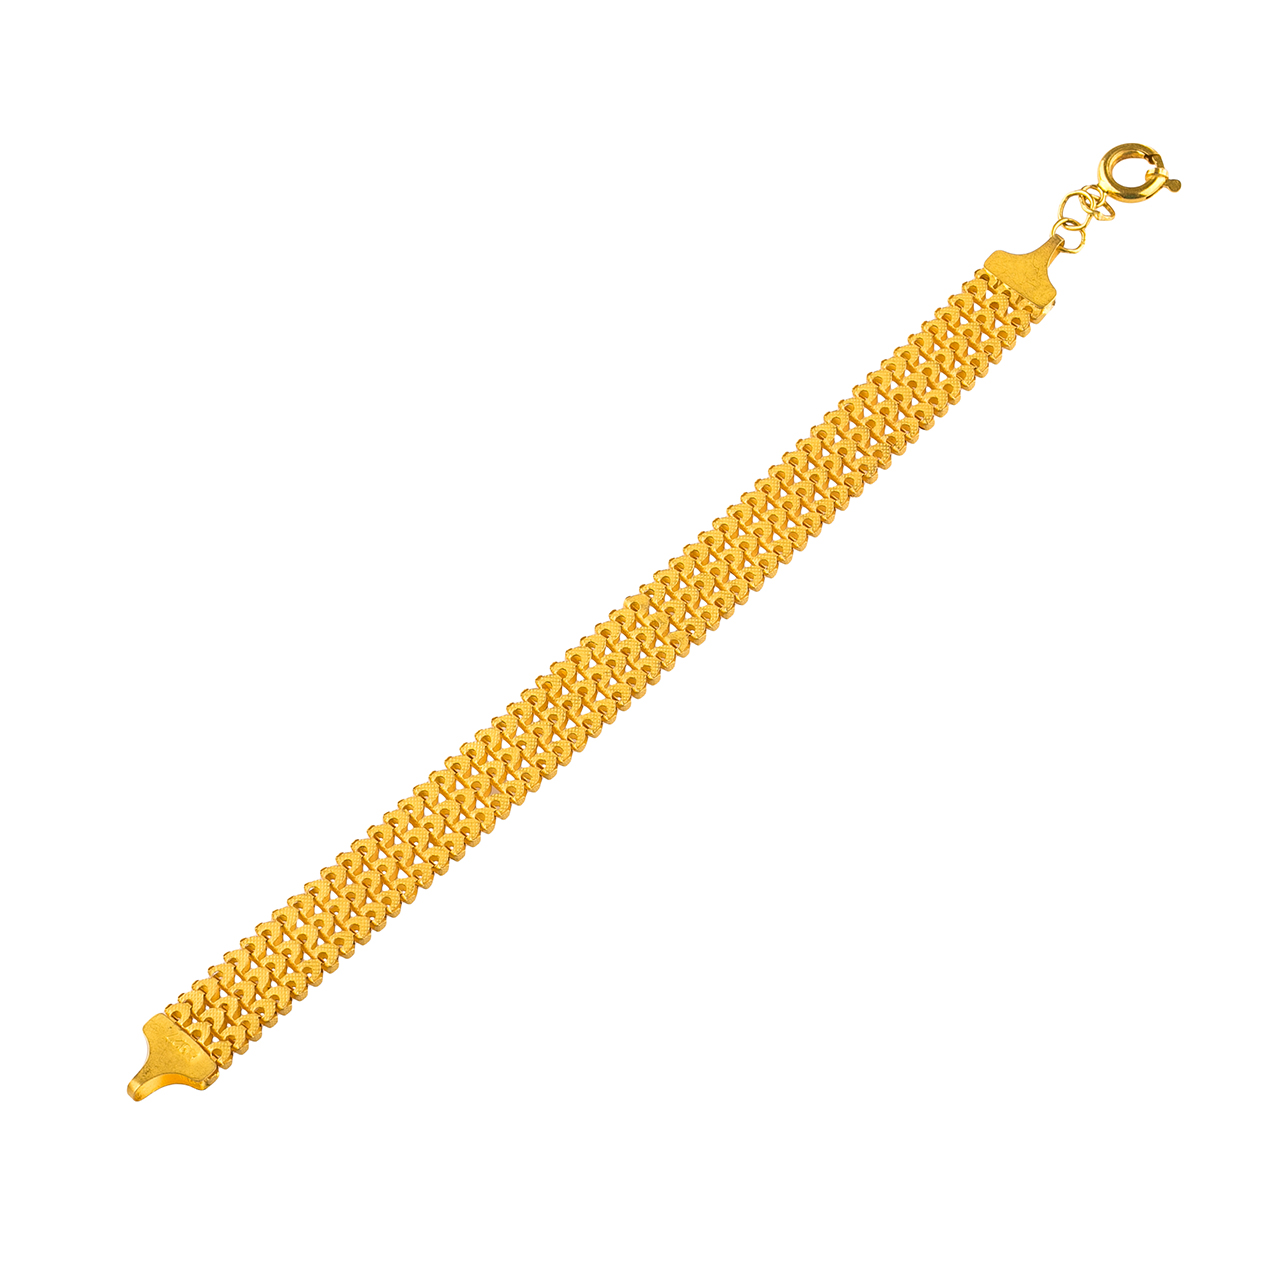 دستبند طلا 18 عیار  گالری طلاچی مدل سورنتو